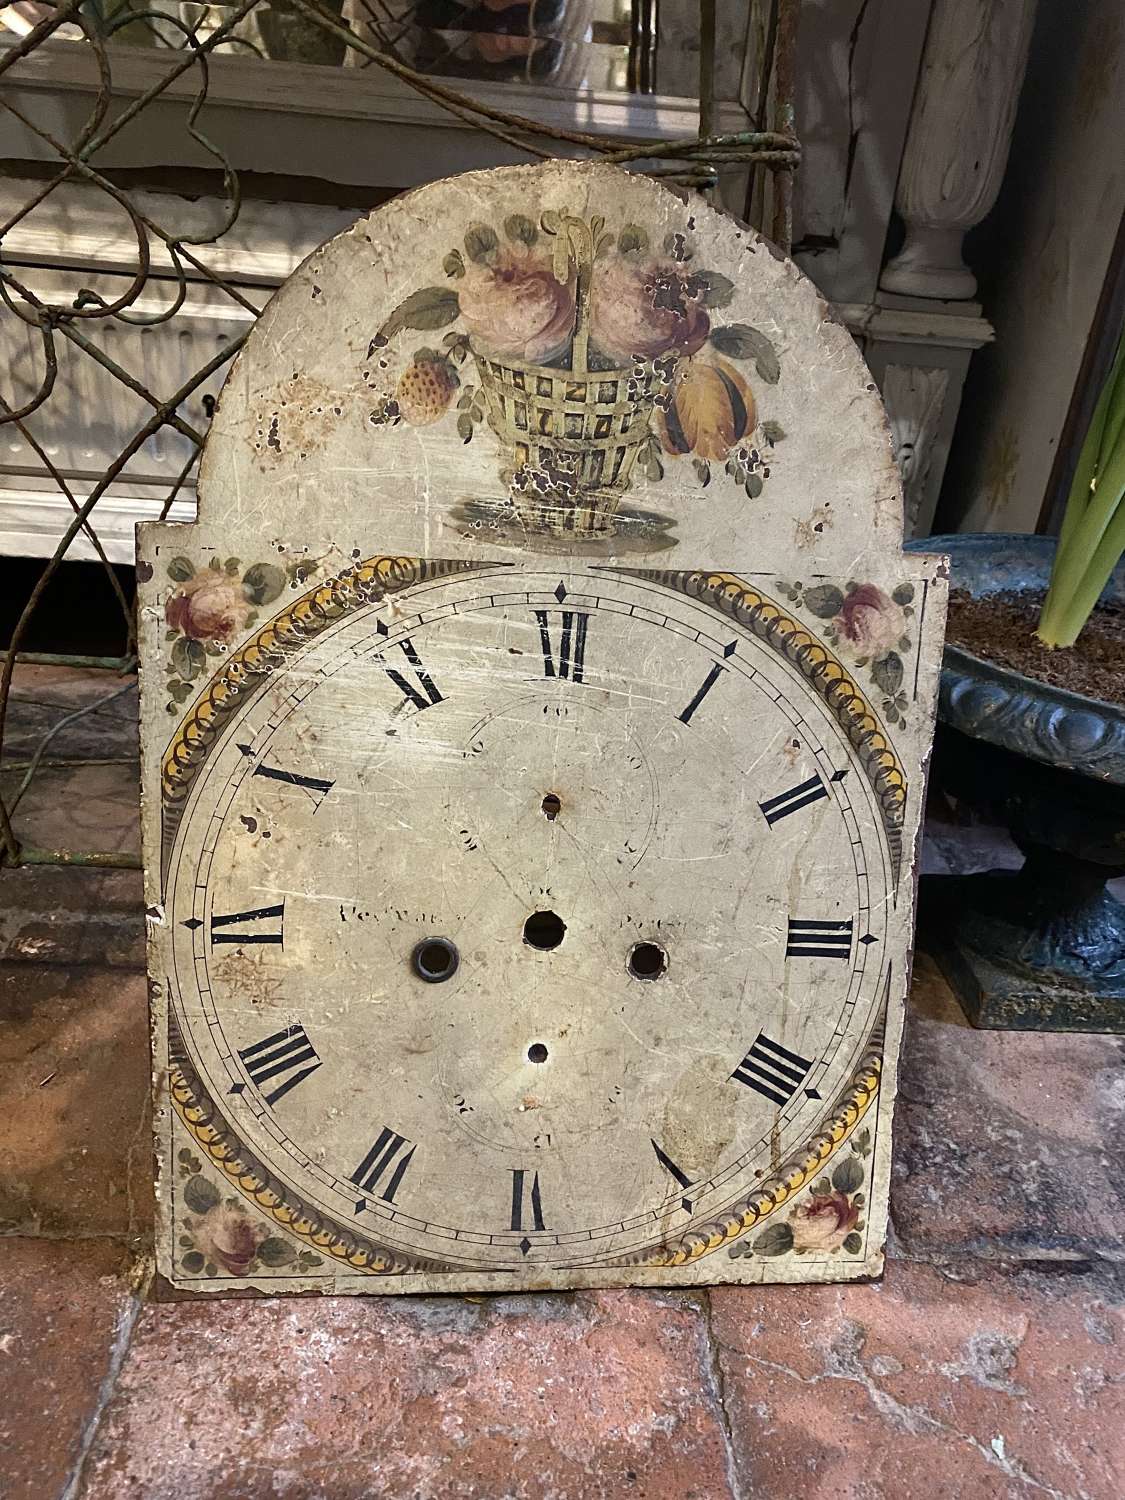 Georgian clock face